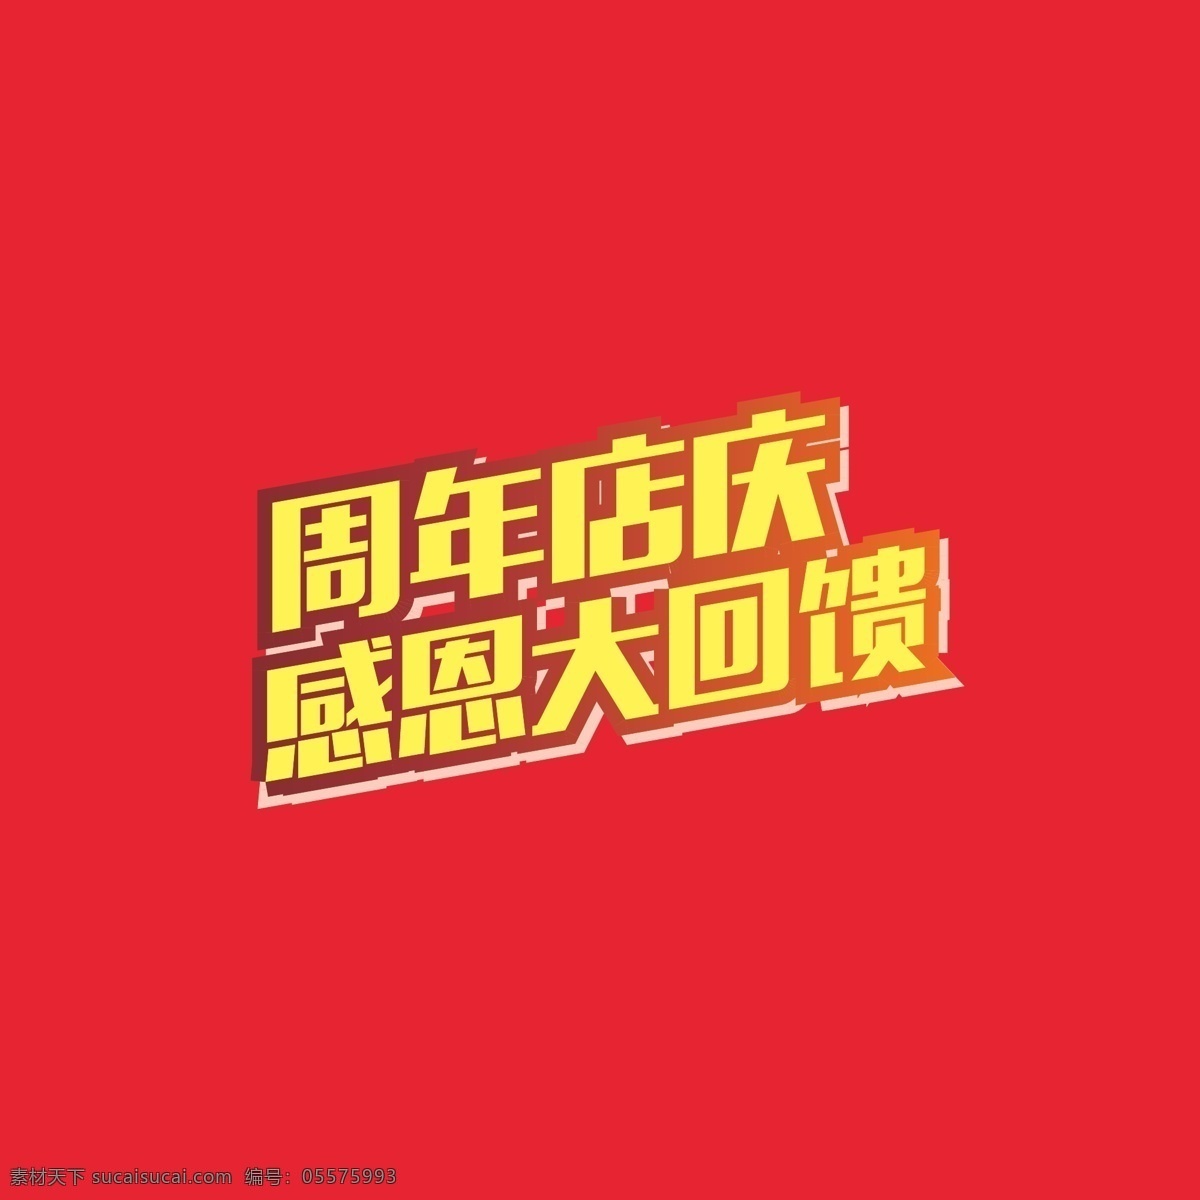 周年 店 庆 字体 周年店庆 感恩 大回馈 金色 红金 字体元素 文化艺术 节日庆祝